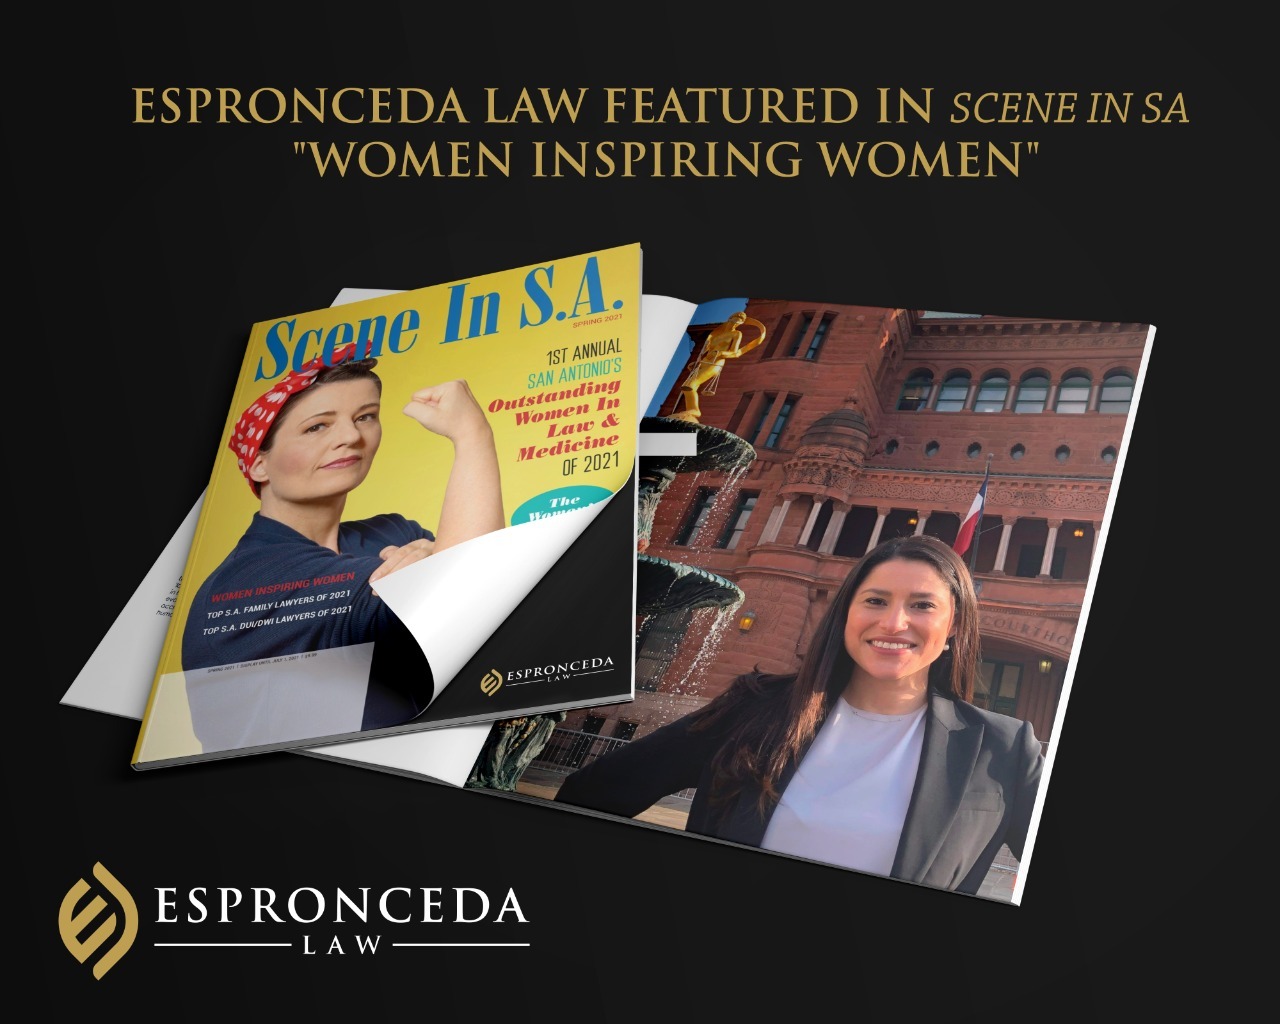 Espronceda Law Featured in Scene in SA “Women Inspiring Women”